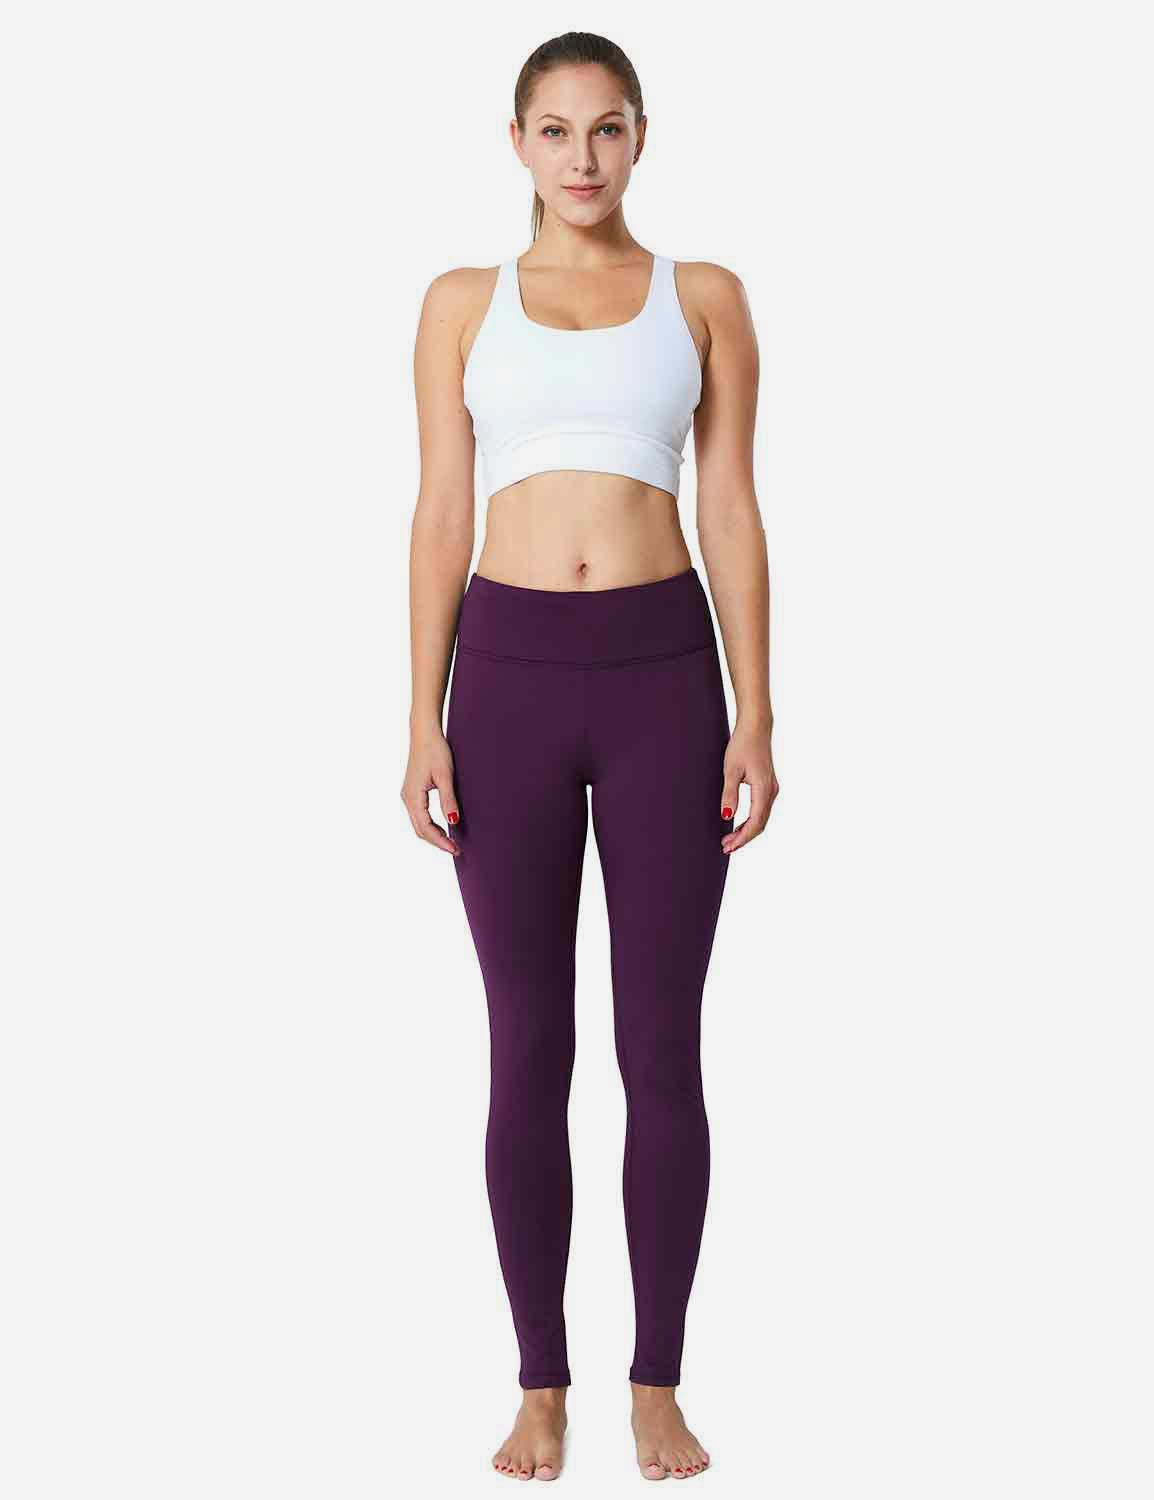 Baleaf Women's Mid-Rise Fleece Lined Basic Yoga & Workout Leggings abh018 Purple Full